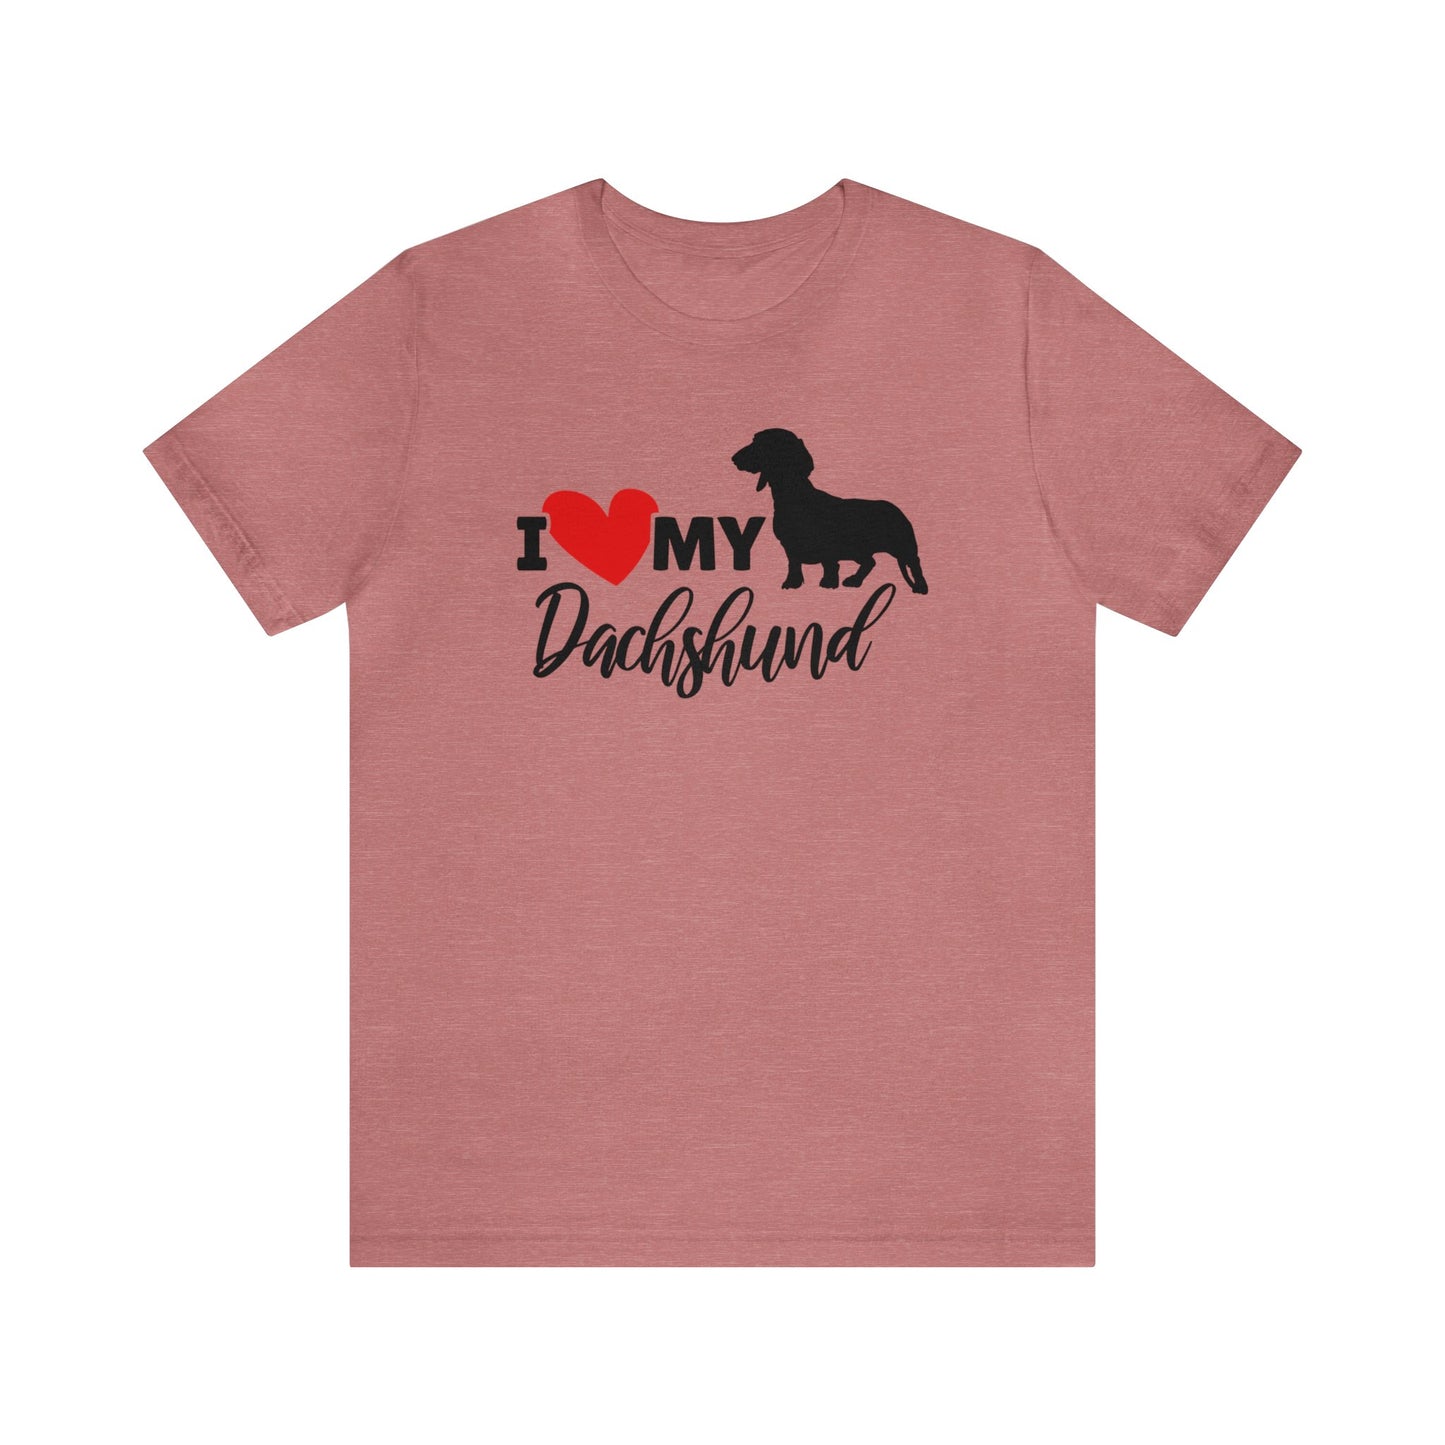 Dachshund Shirt - I Love My Dachshund Shirt